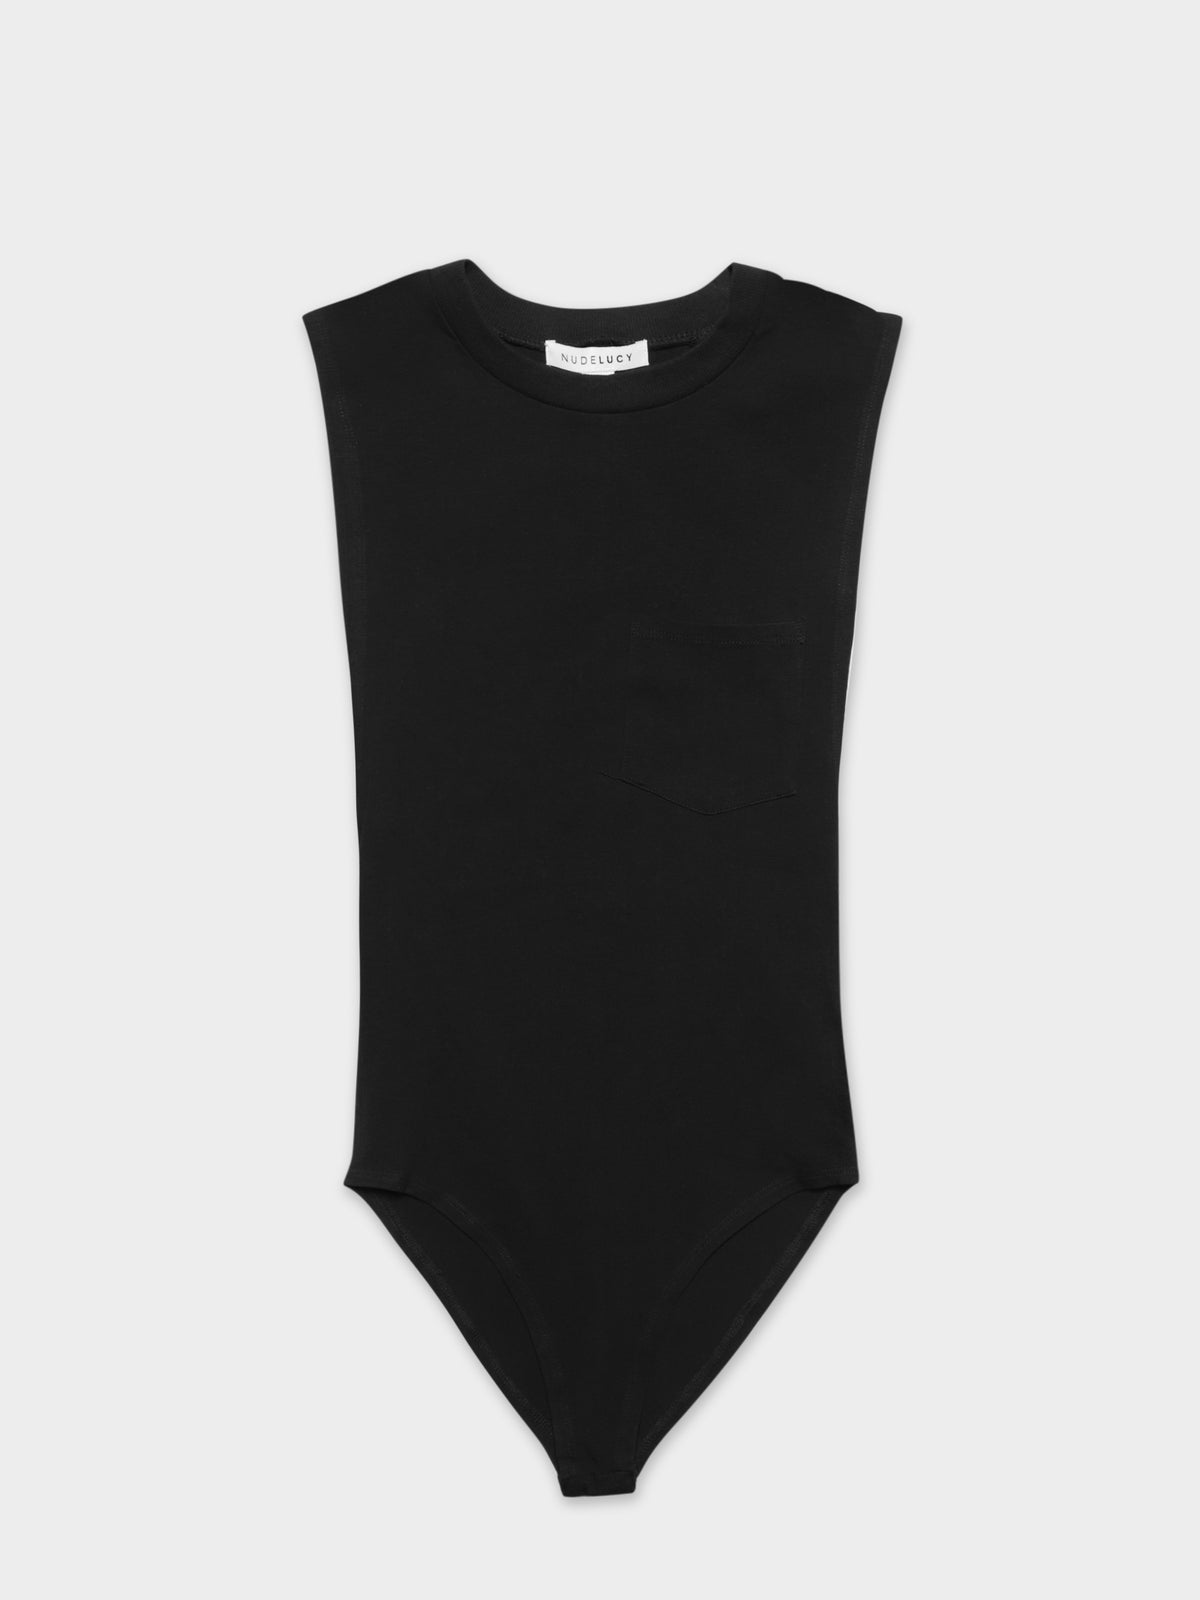 Cloverdale Bodysuit in Black